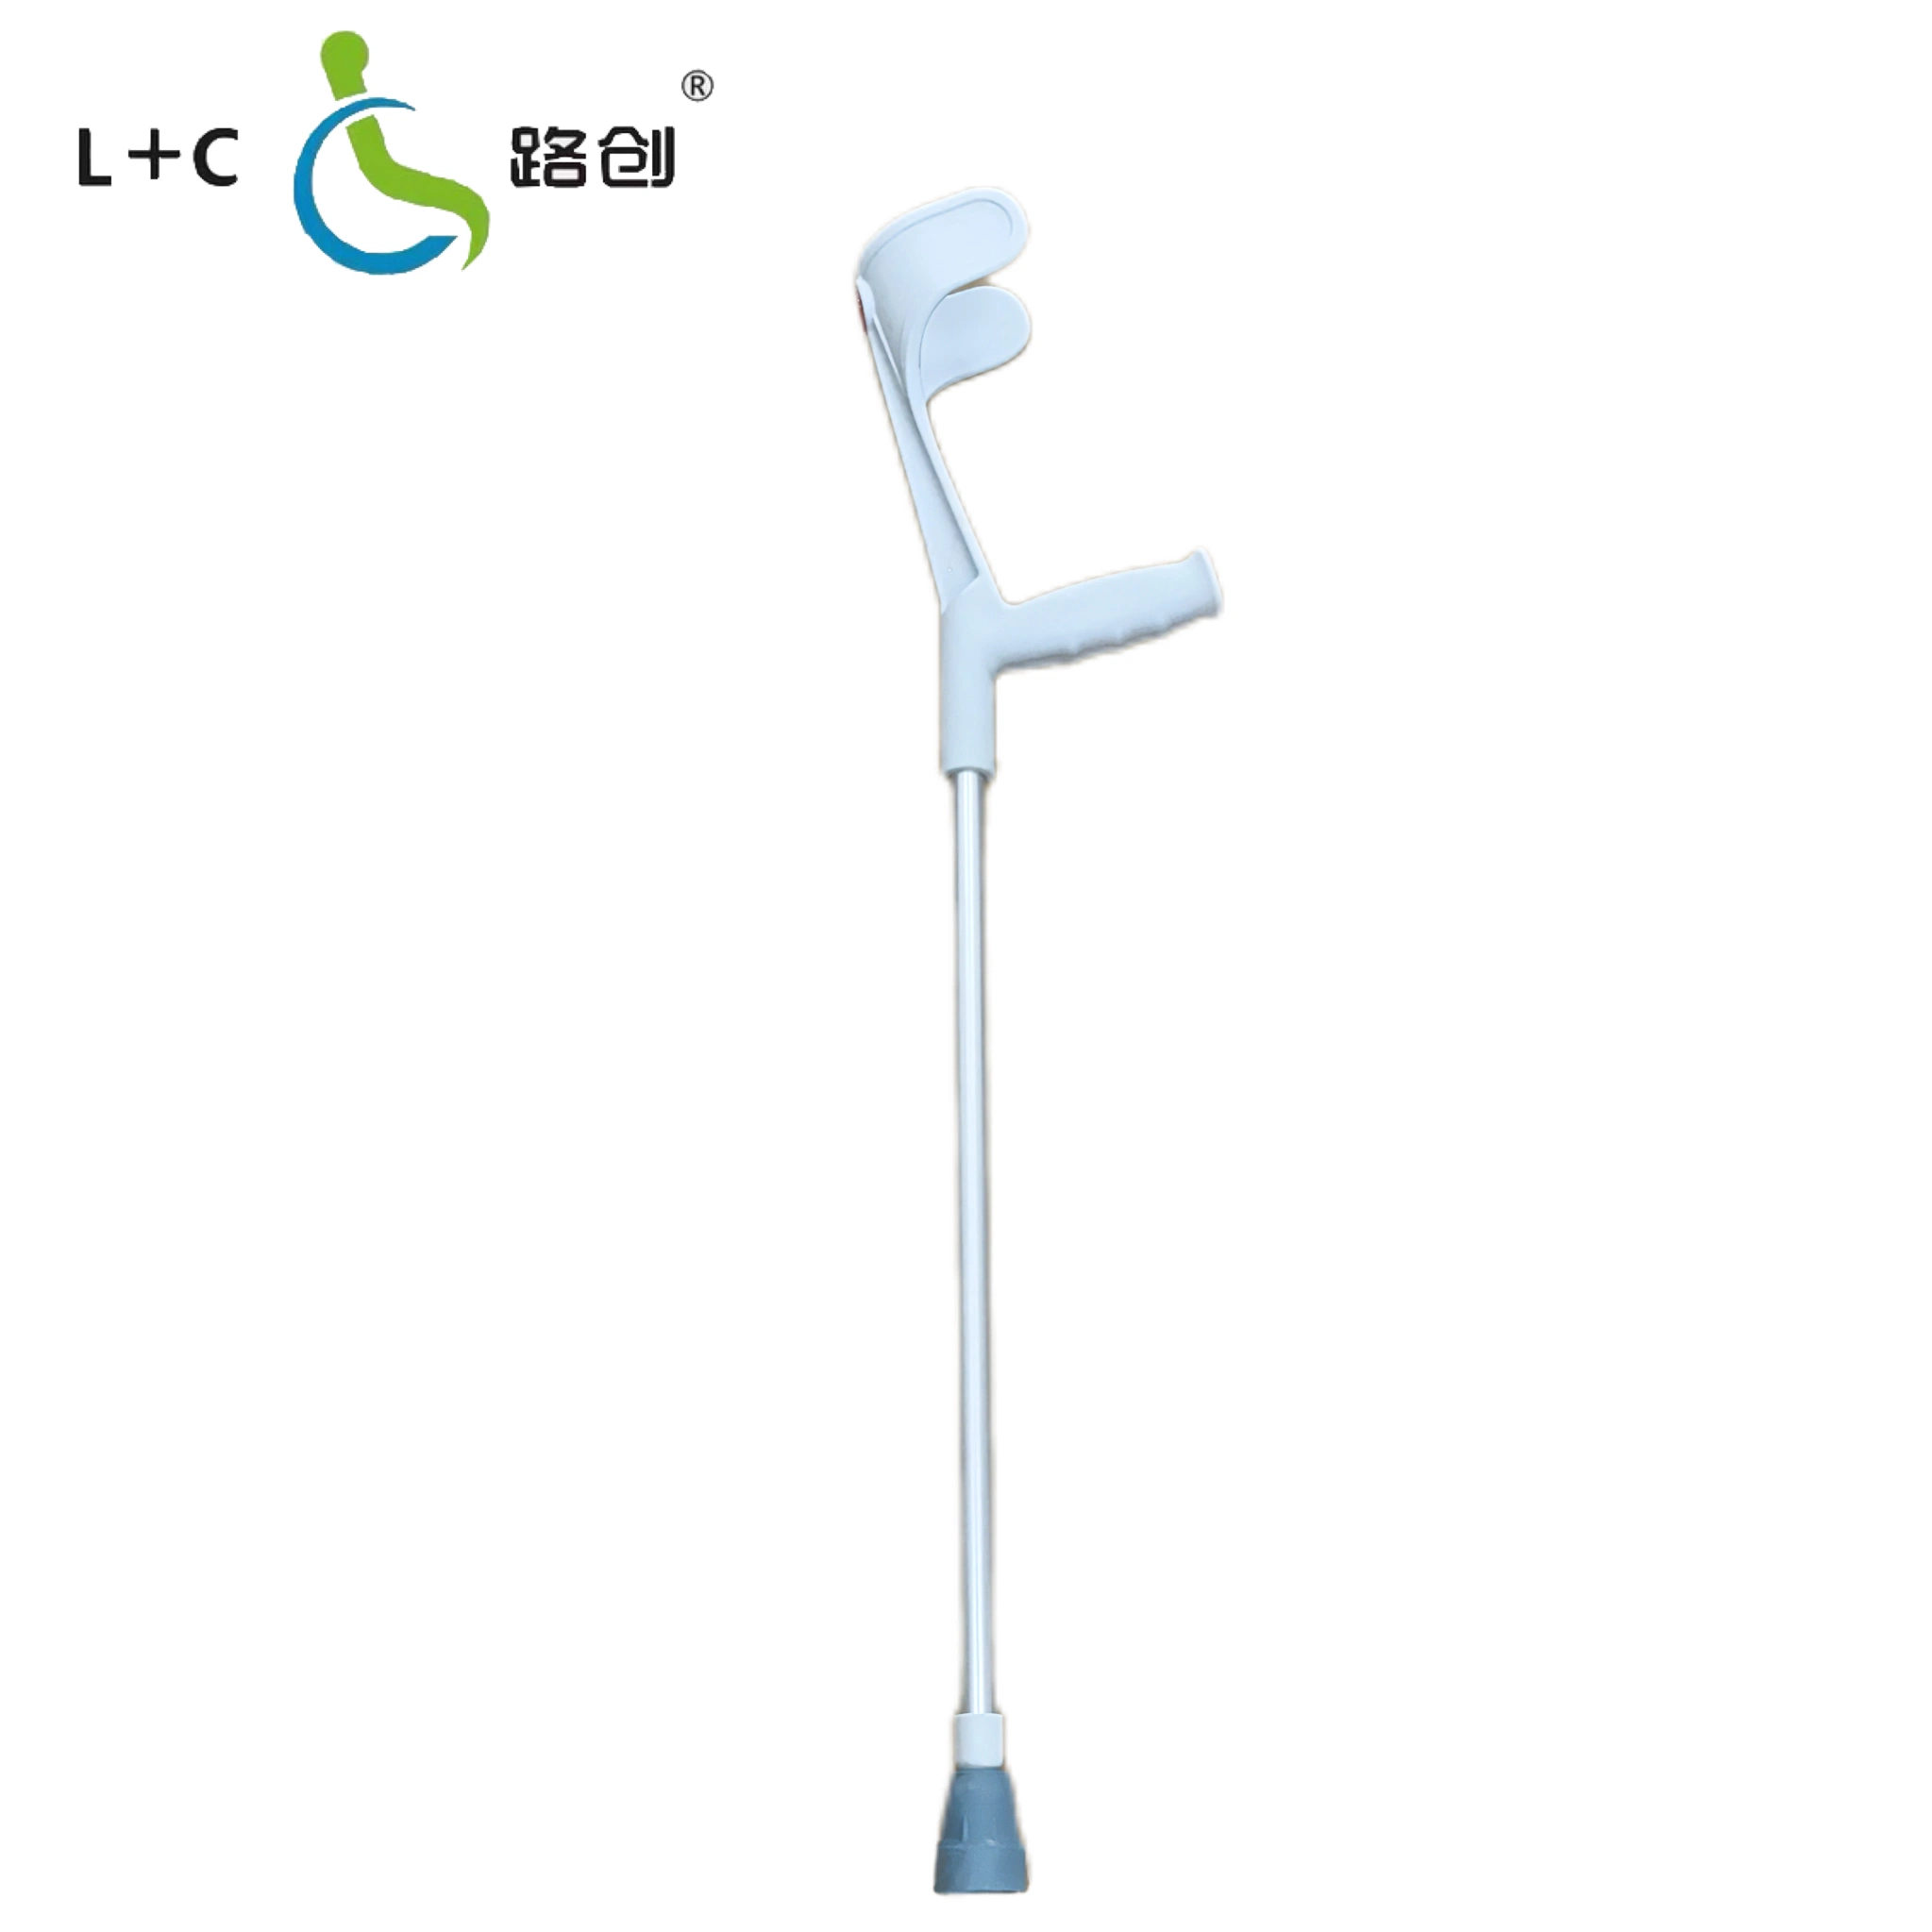 Bâton de marche en aluminium haute résistance pour les personnes âgées et les personnes handicapées en provenance de Chine.